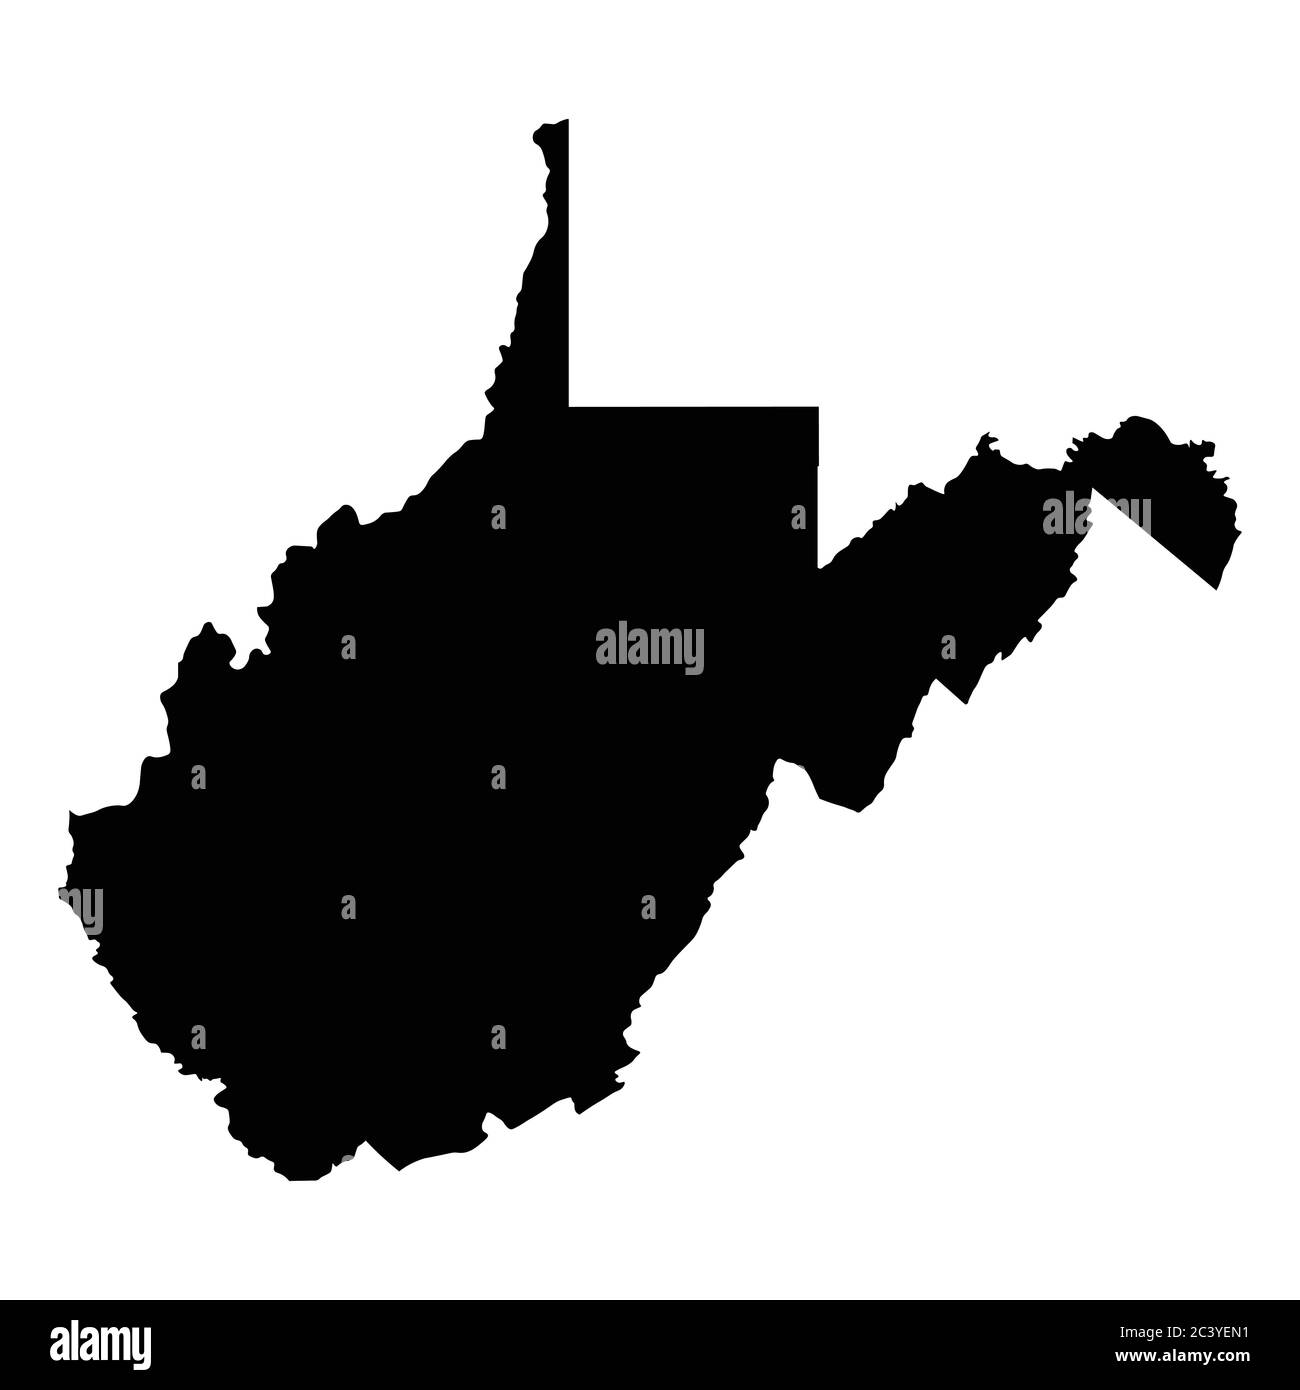 West Virginia WV State Map USA. Schwarze Silhouette einfarbige Karte isoliert auf weißem Hintergrund. EPS-Vektor Stock Vektor